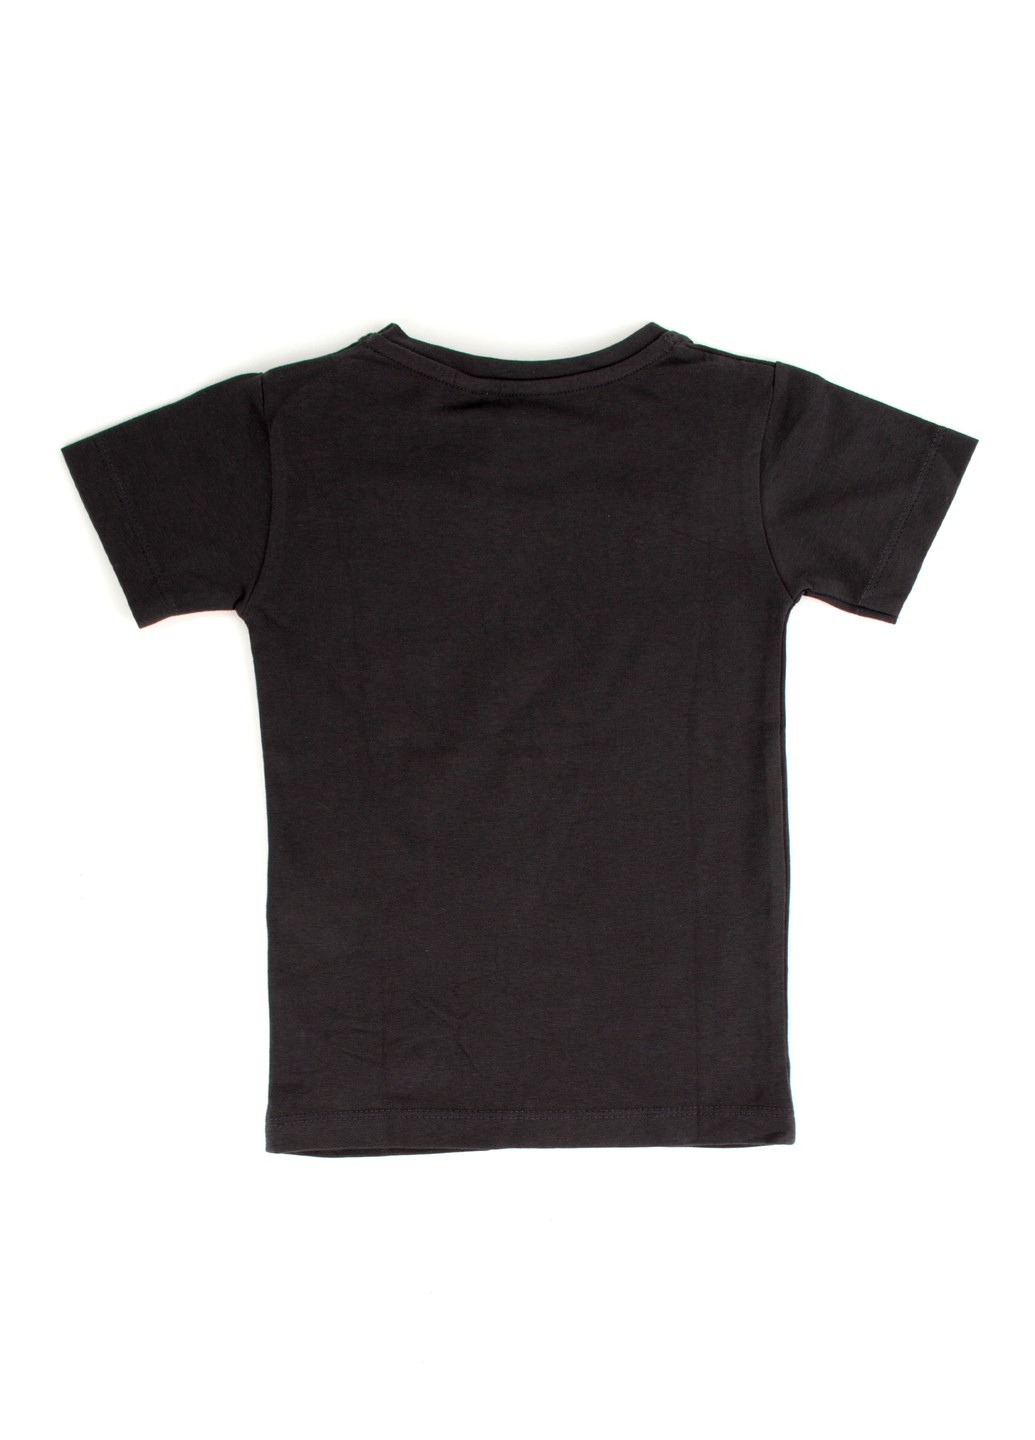 Черная футболка на мальчика tom-du черная с принтом очки TOM DU